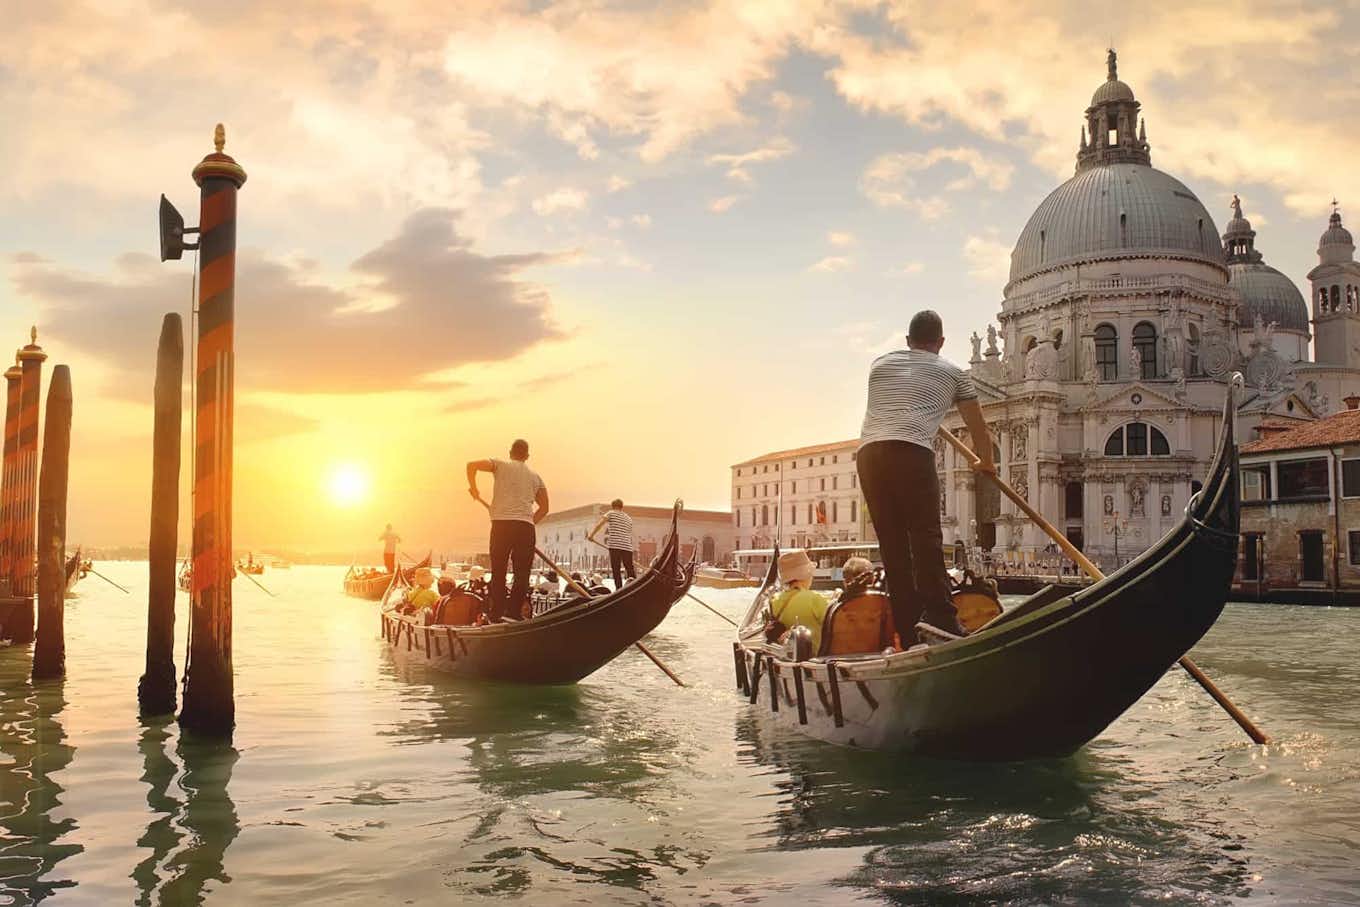 Le gondole e la basilica di San Marco a Venezia